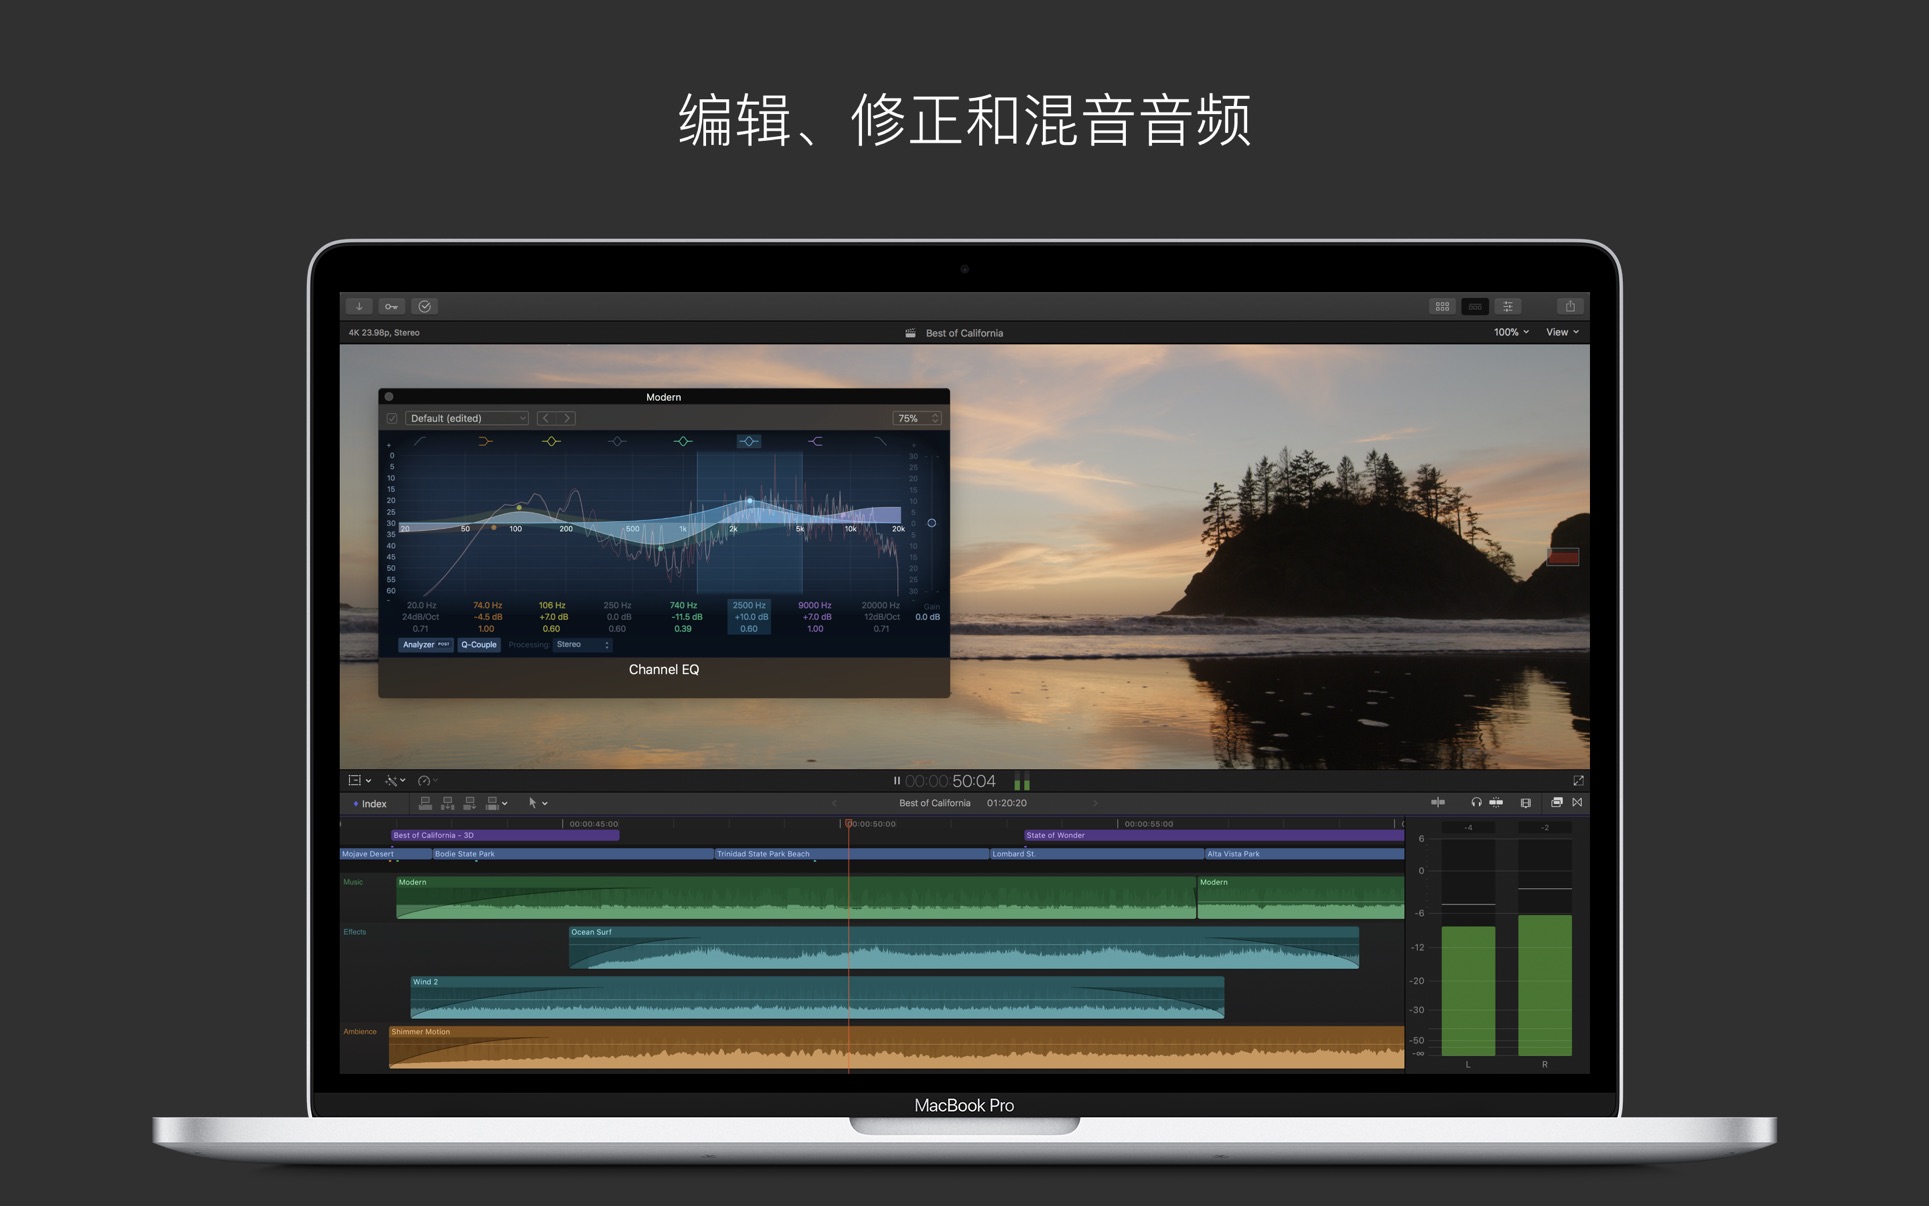 视频制作 Final Cut Pro for Mac 10.6.10 中文破解版 最强大视频后期制作软件